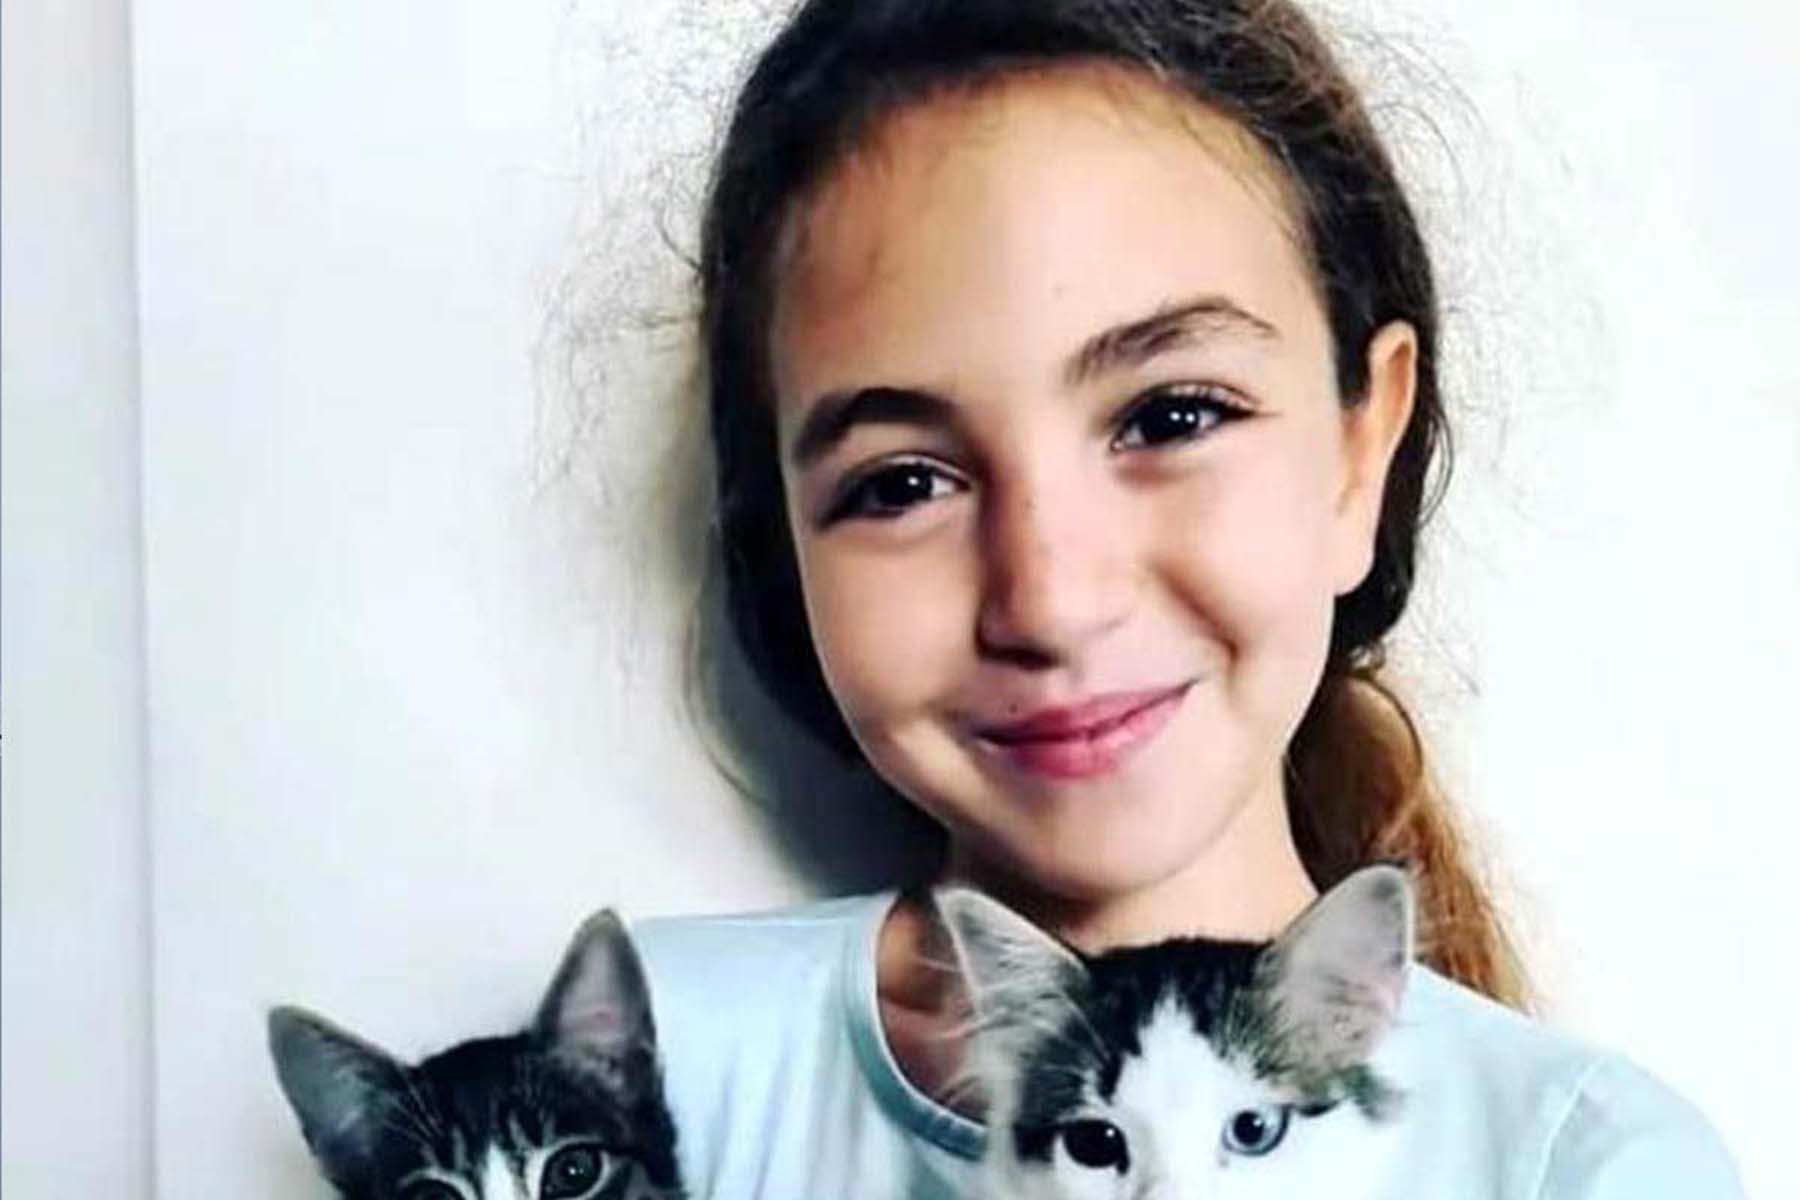 Güzel gülüşü fotoğraflarda kaldı! Köpeklerin kovalaması sonrası kamyonun altında kalan 10 yaşındaki Mahra Melin Pınar, hayatını kaybetti